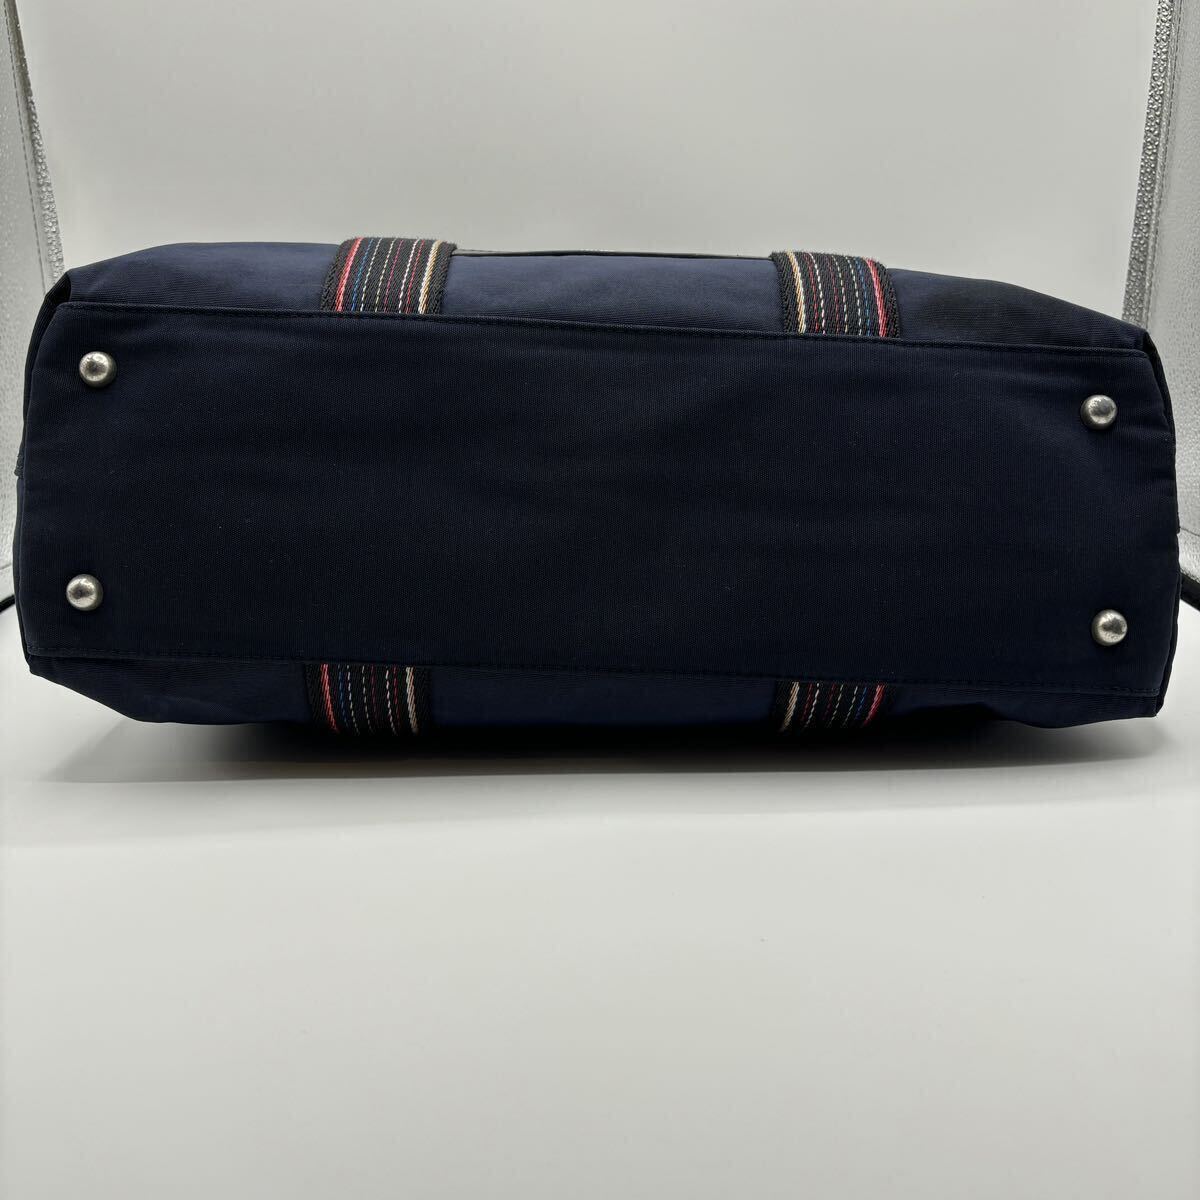 A4/ превосходный товар Paul Smith Paul Smith мужской портфель большая сумка мульти- полоса Logo кожа большая вместимость плечо .. ходить на работу темно-синий темно-синий 